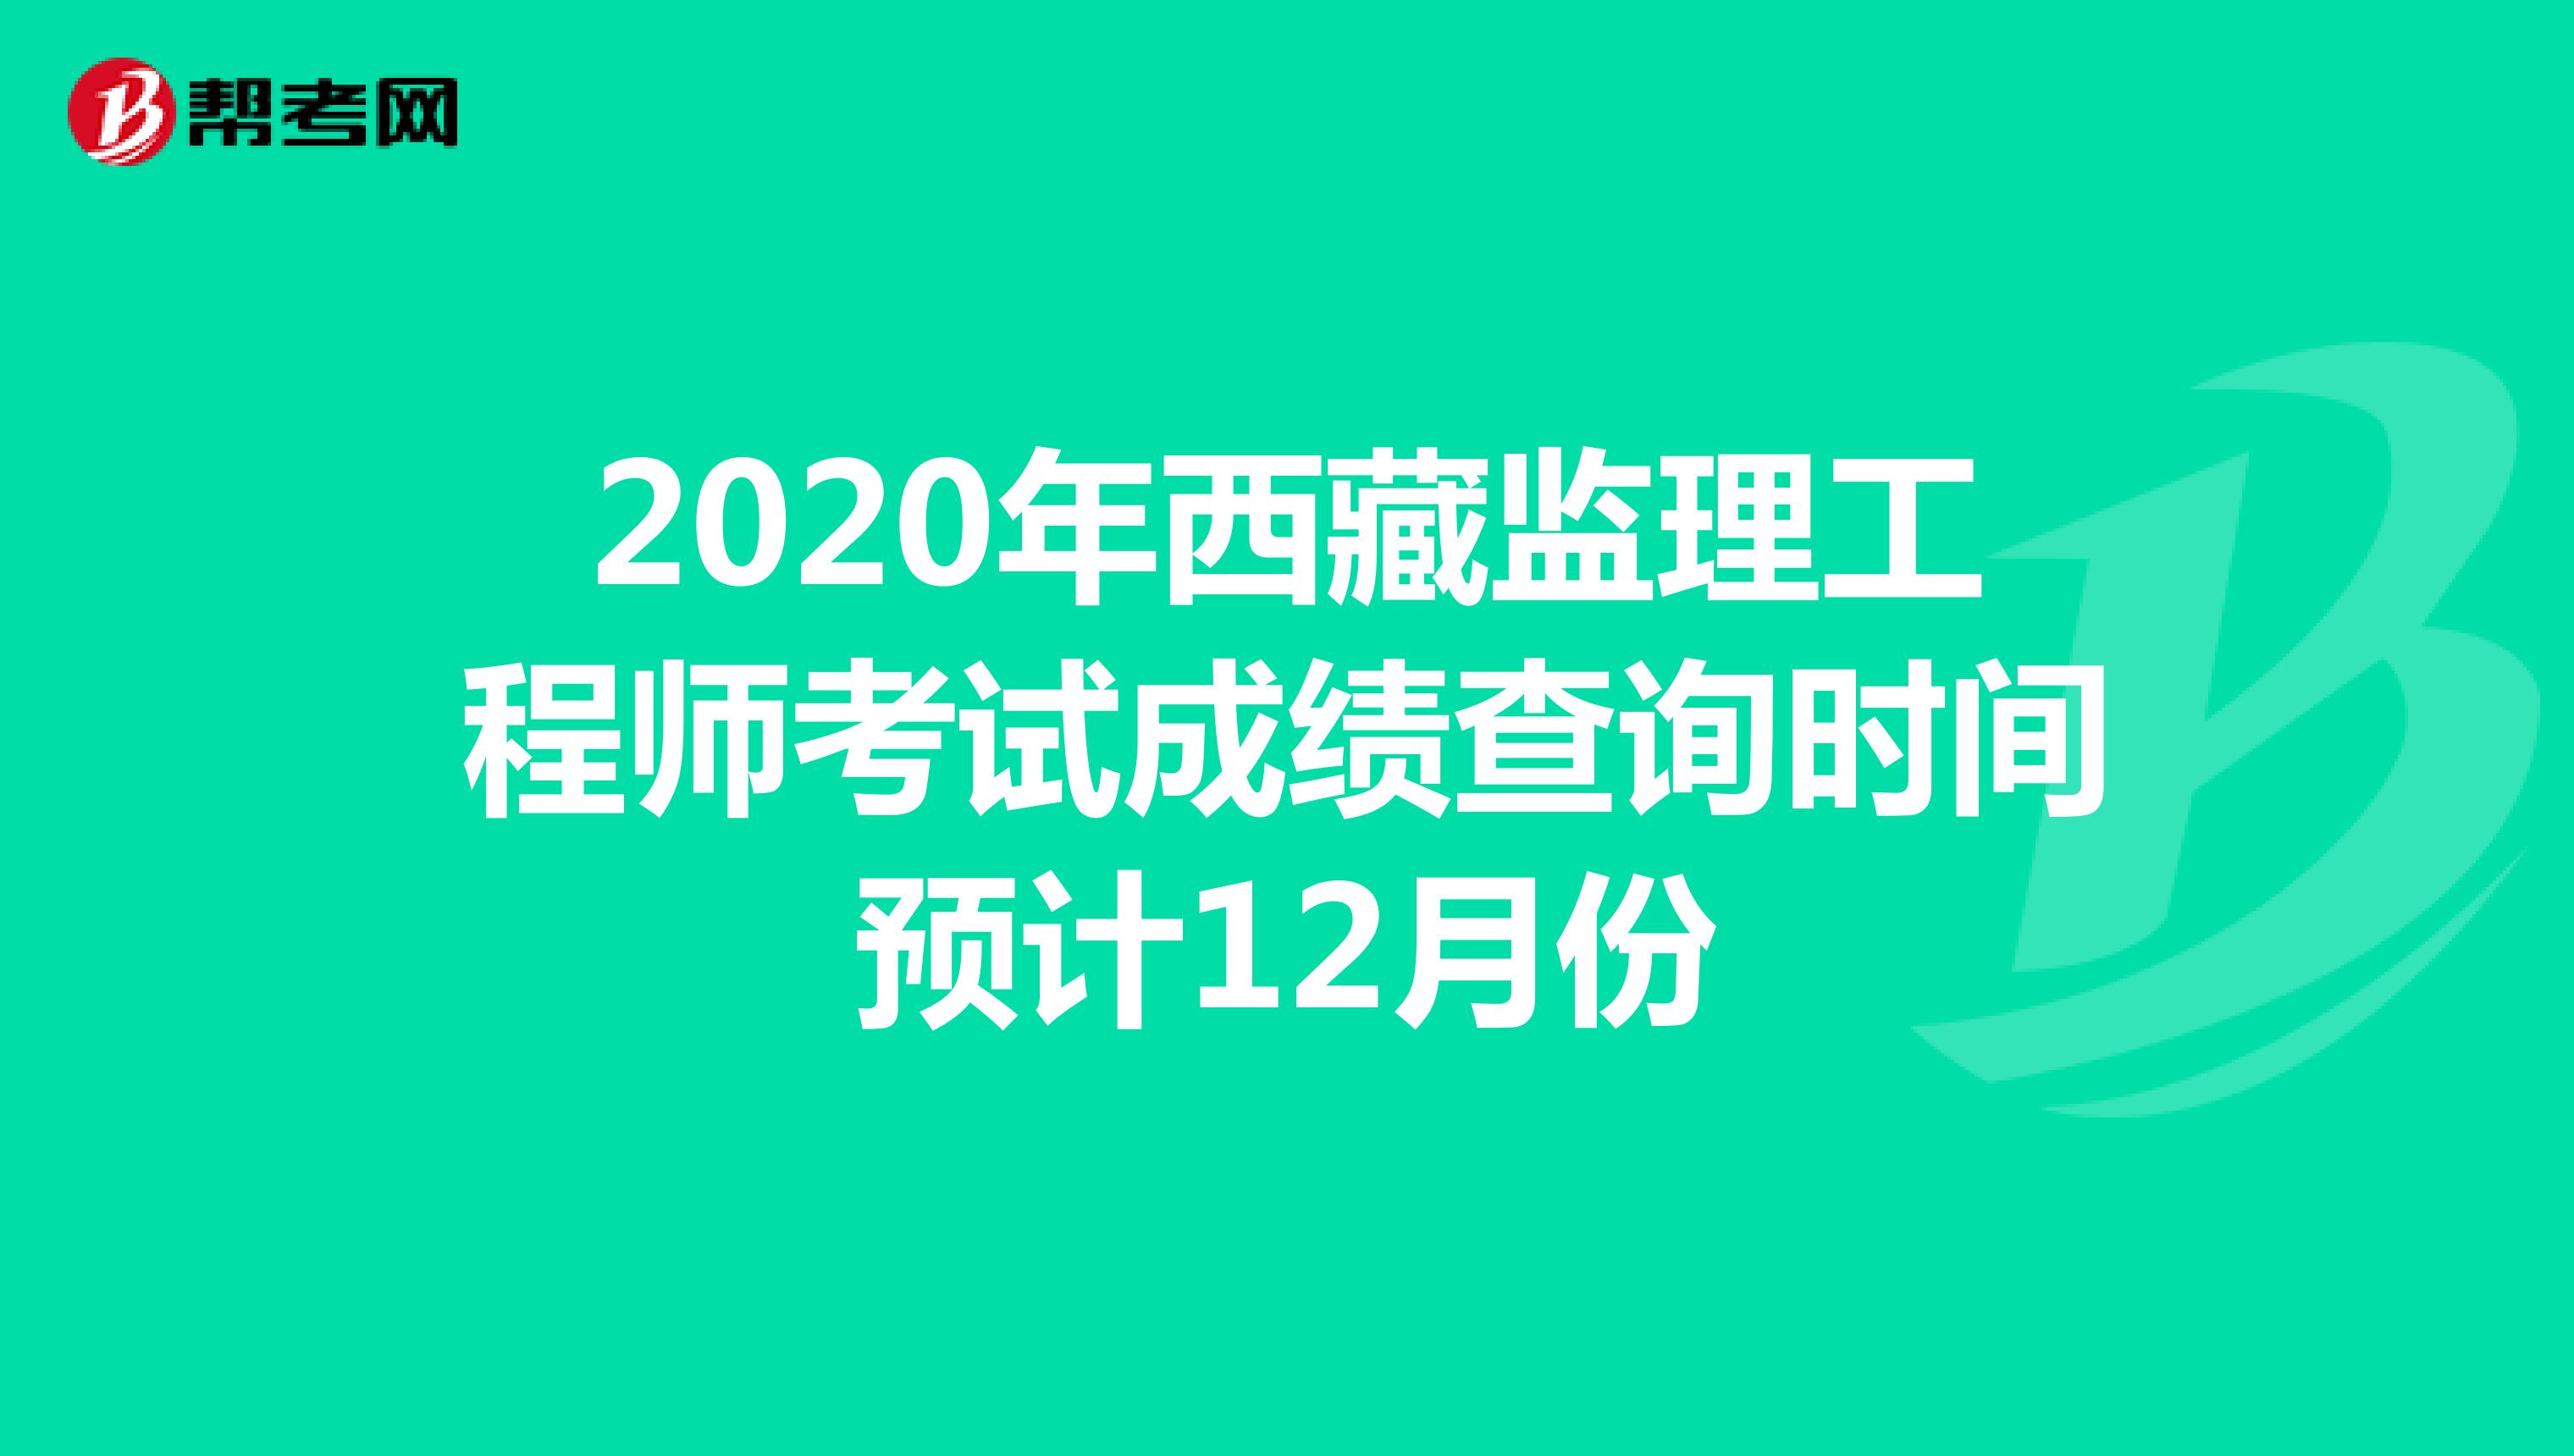 2020年西藏监理工程师考试成绩查询时间预计12月份